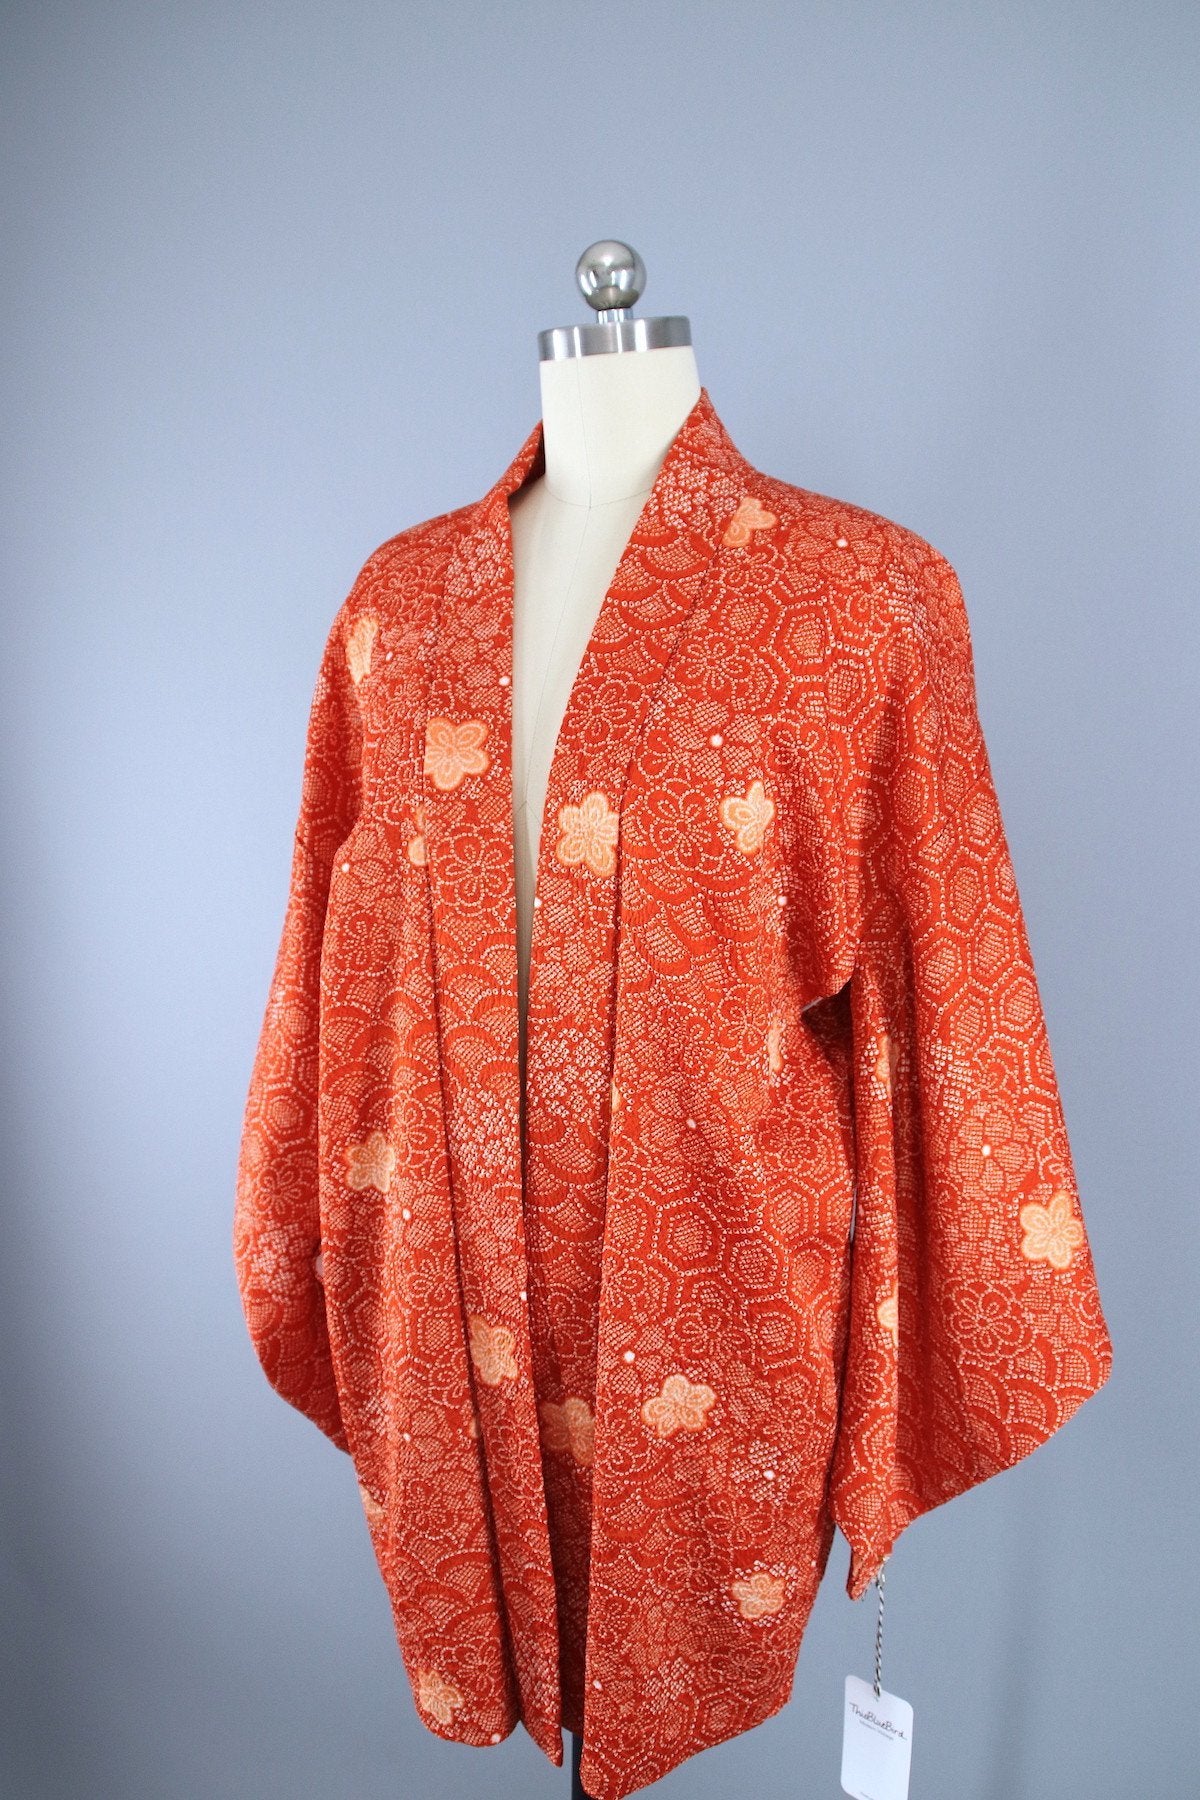 1980s Vintage Haori Kimono Jacket Cardigan / Orange & White Shibori - ThisBlueBird